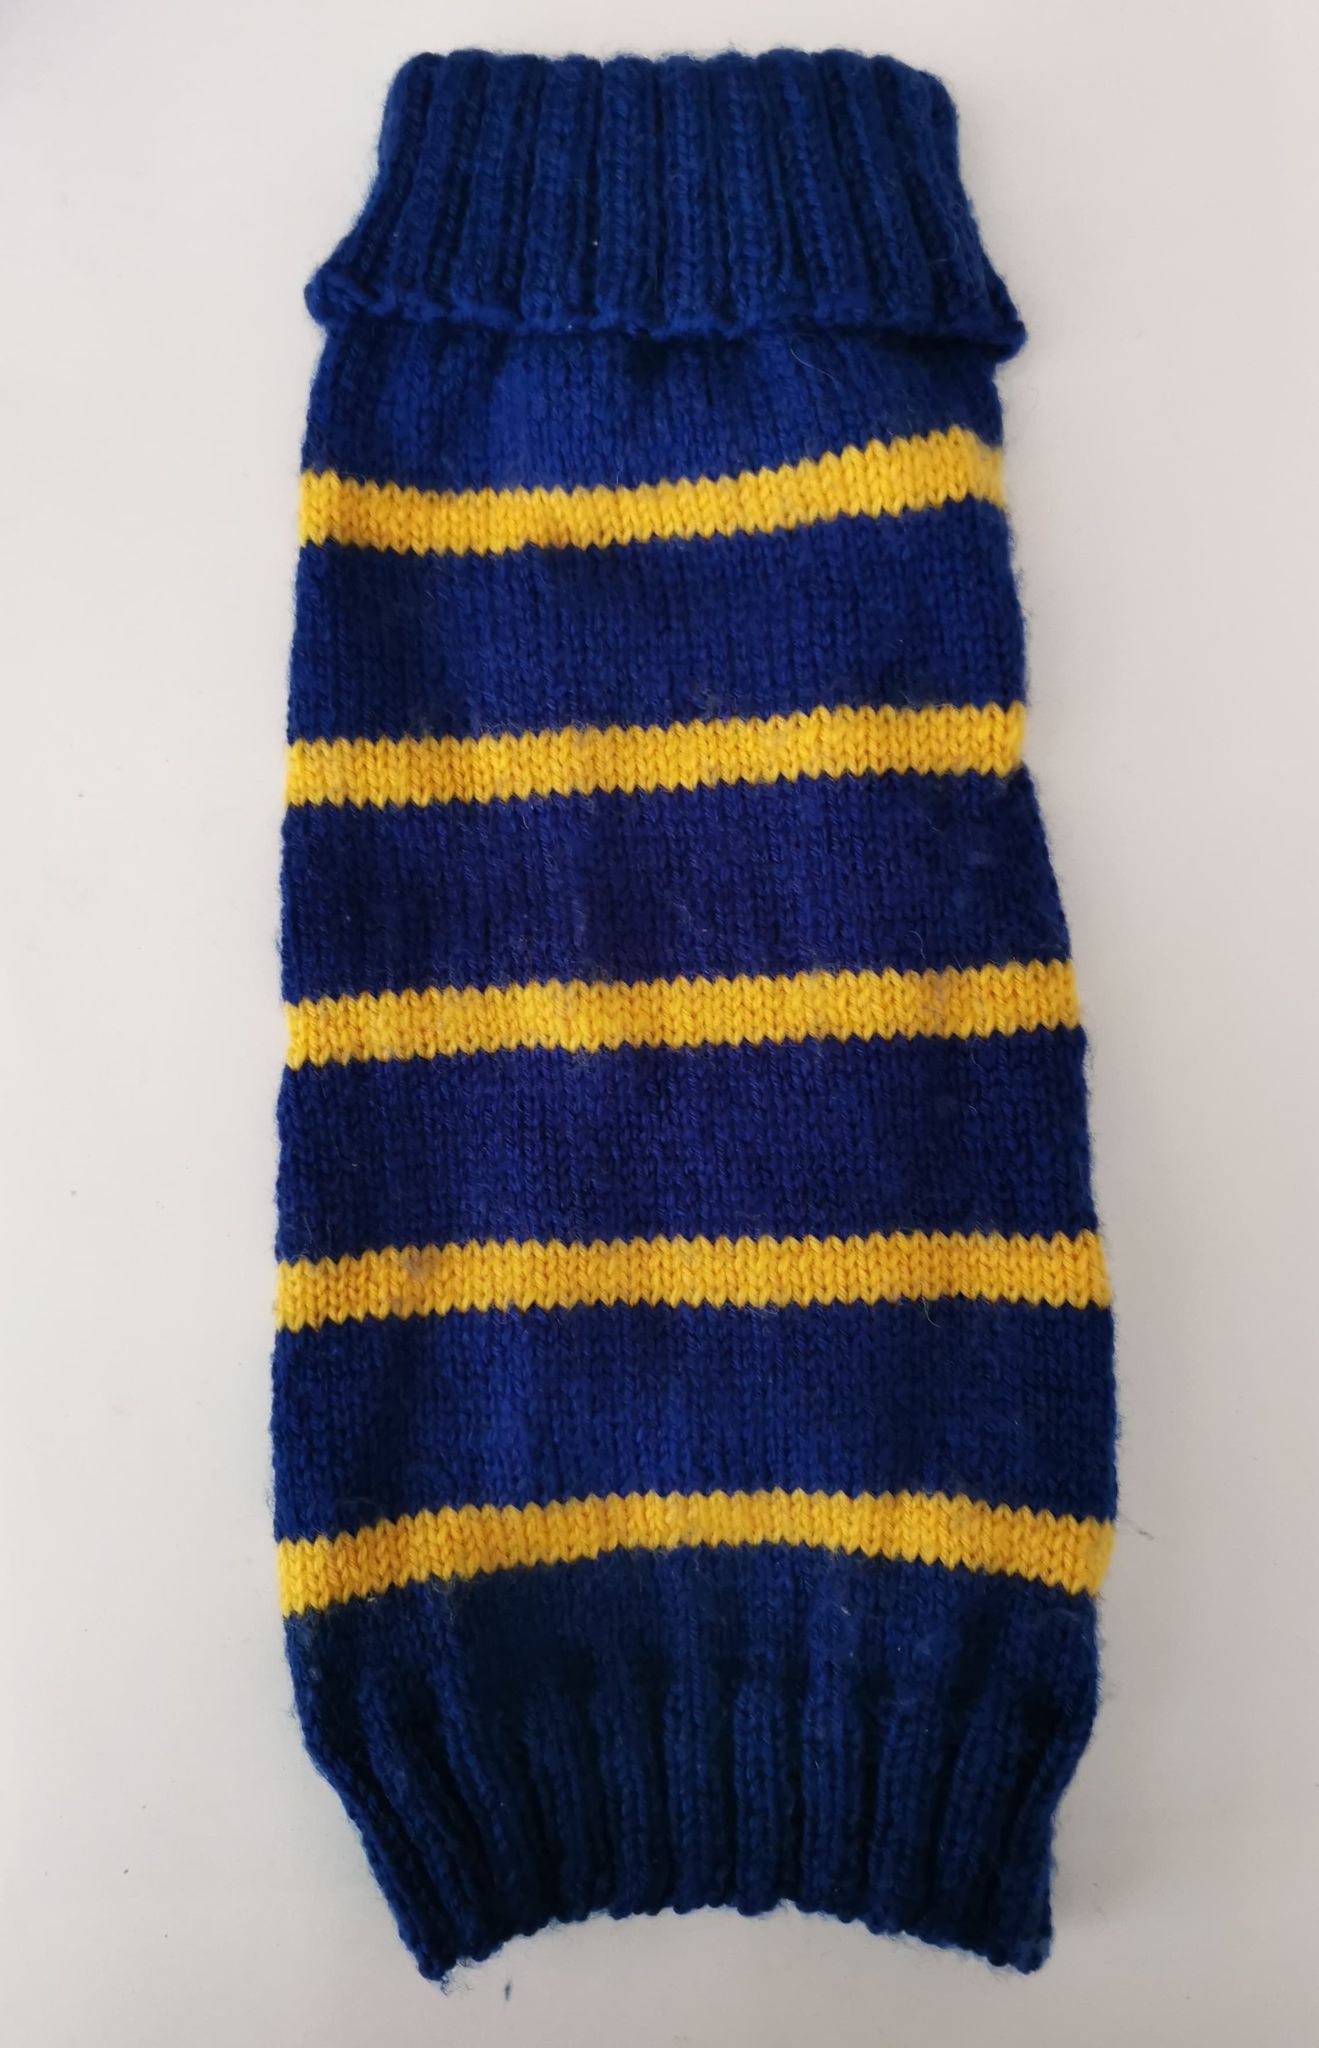 Handstickad tröja Ull-garn blå/gul 32 cm